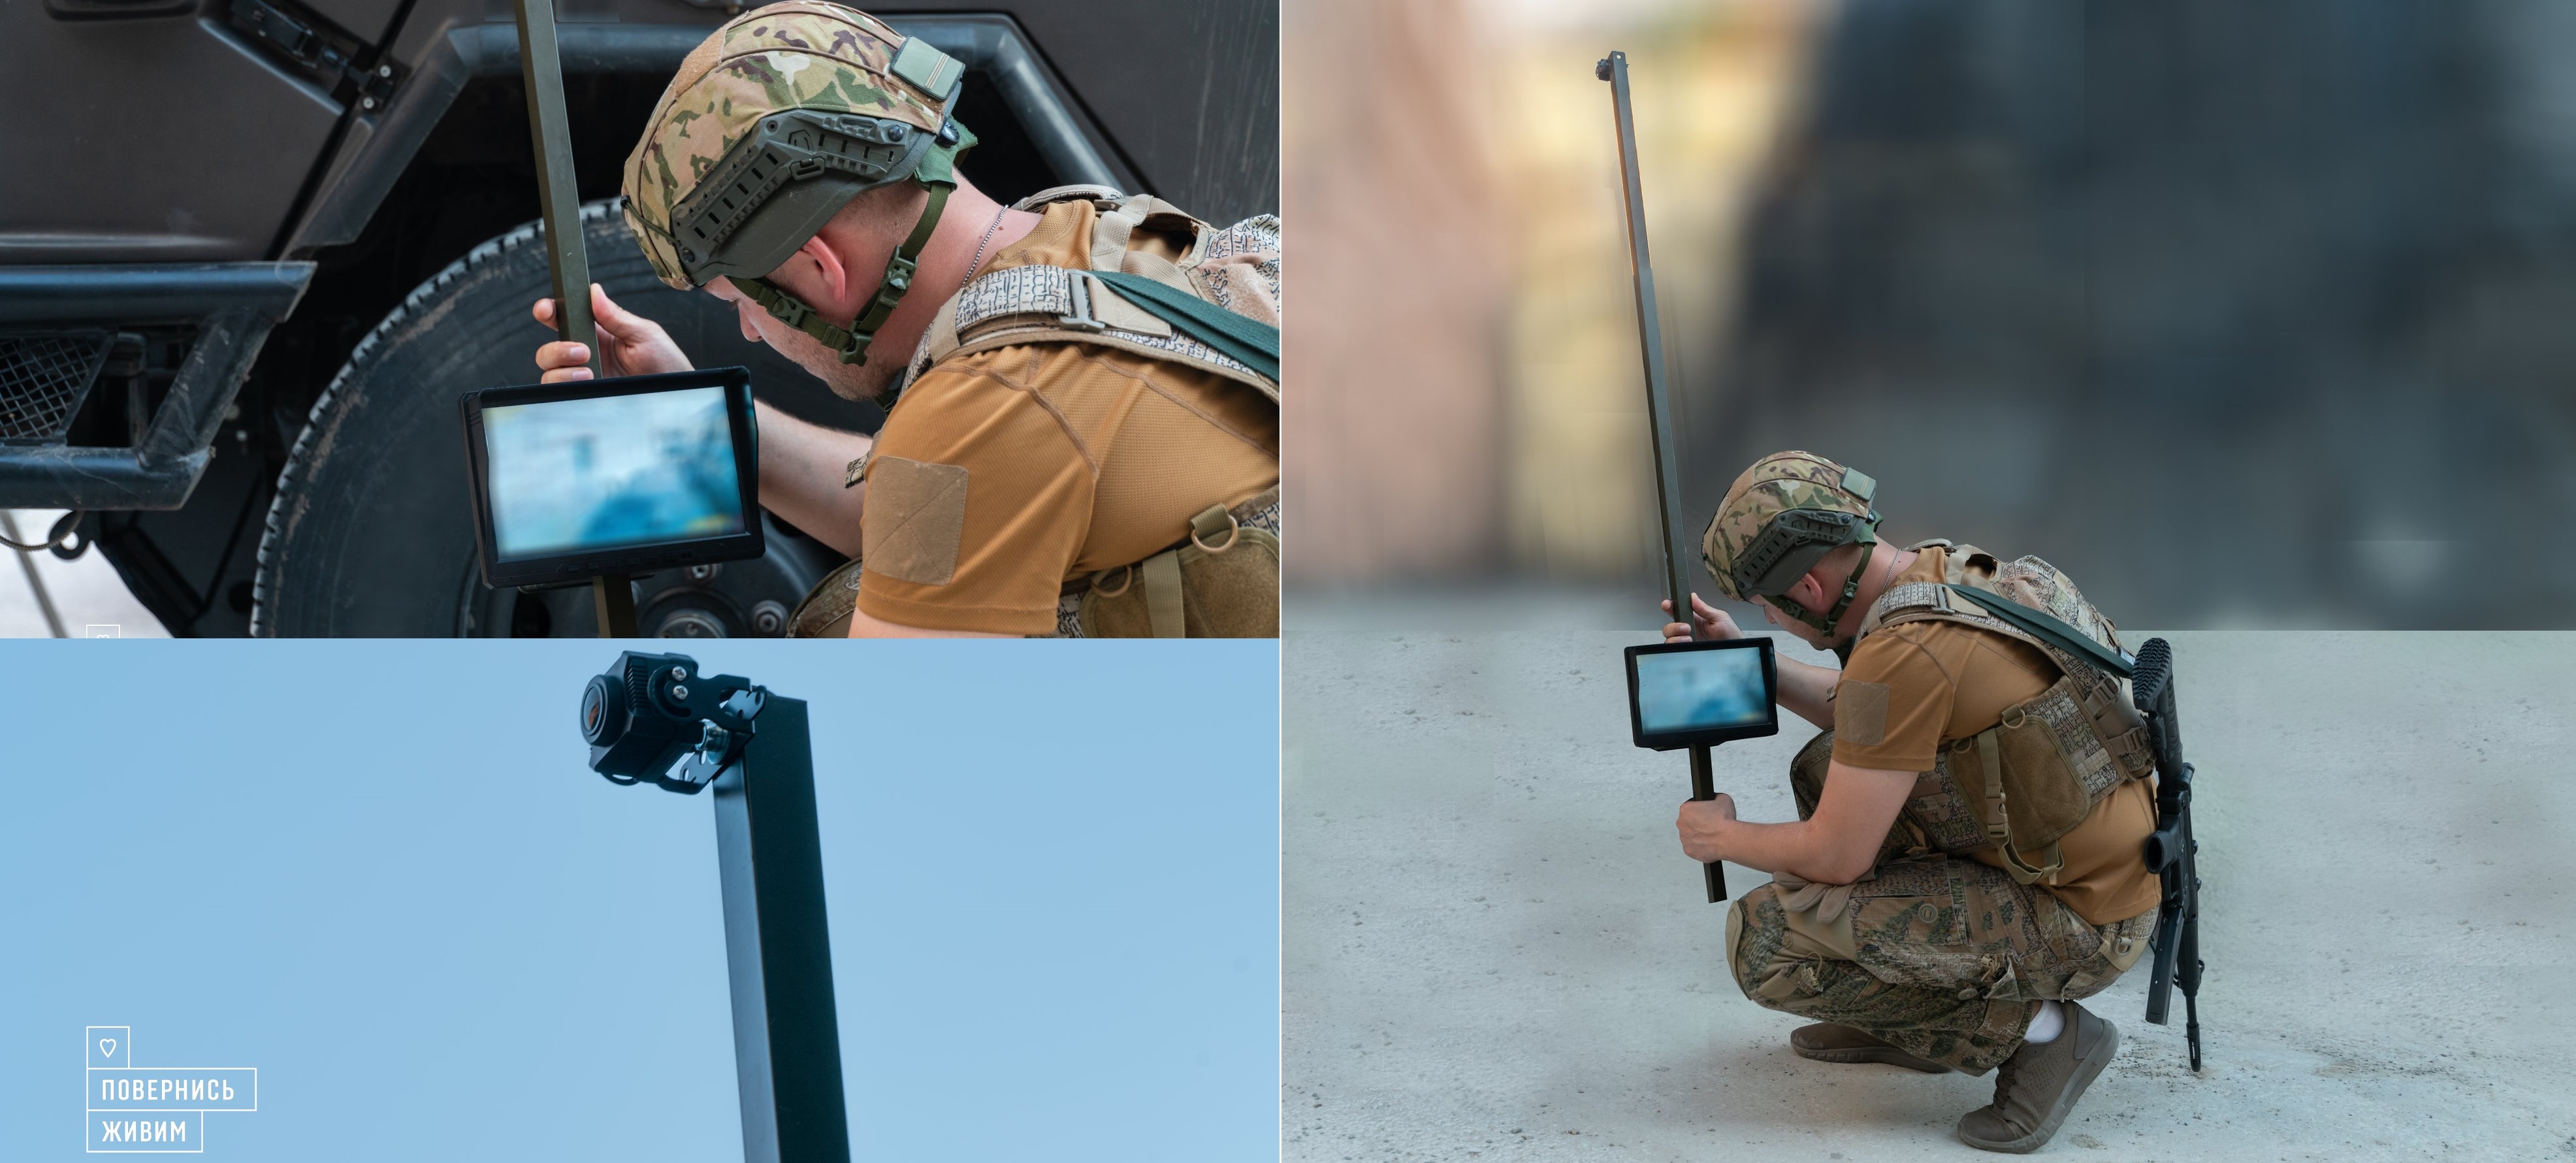 Siły Zbrojne Ukrainy rozpoczęły testowanie „kamery zwiadowczej” z kamerą i wyświetlaczem